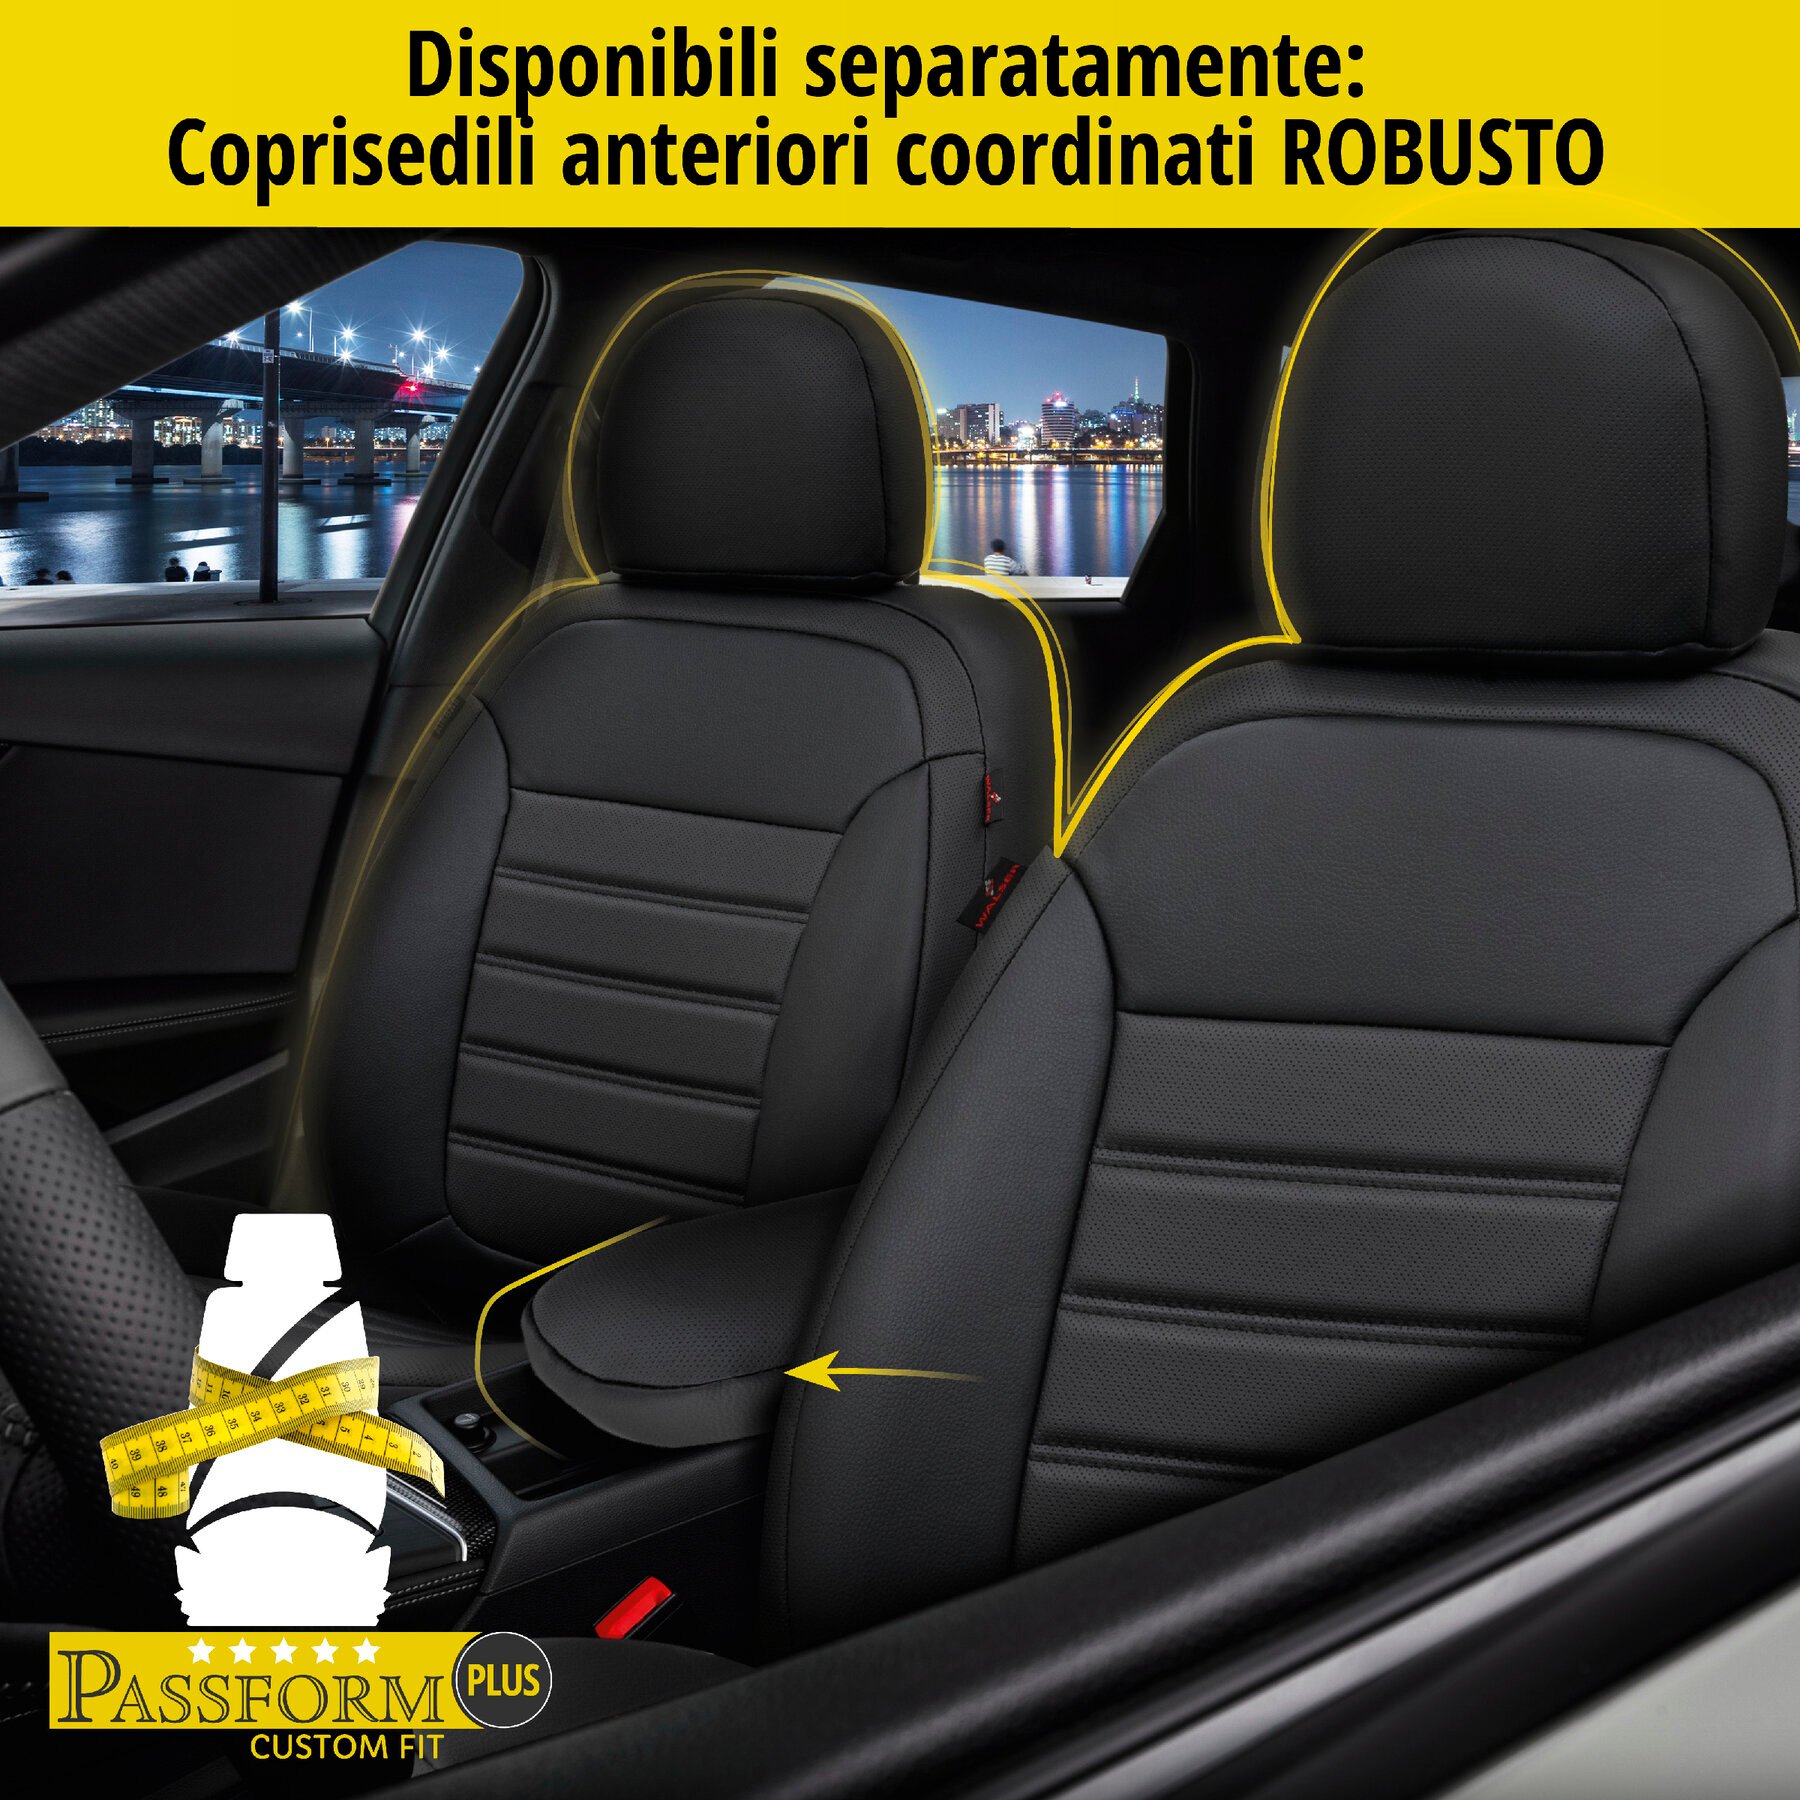 Coprisedili Robusto per Dacia Sandero II 10/2010-Oggi, 1 coprisedili posteriore per sedili normali